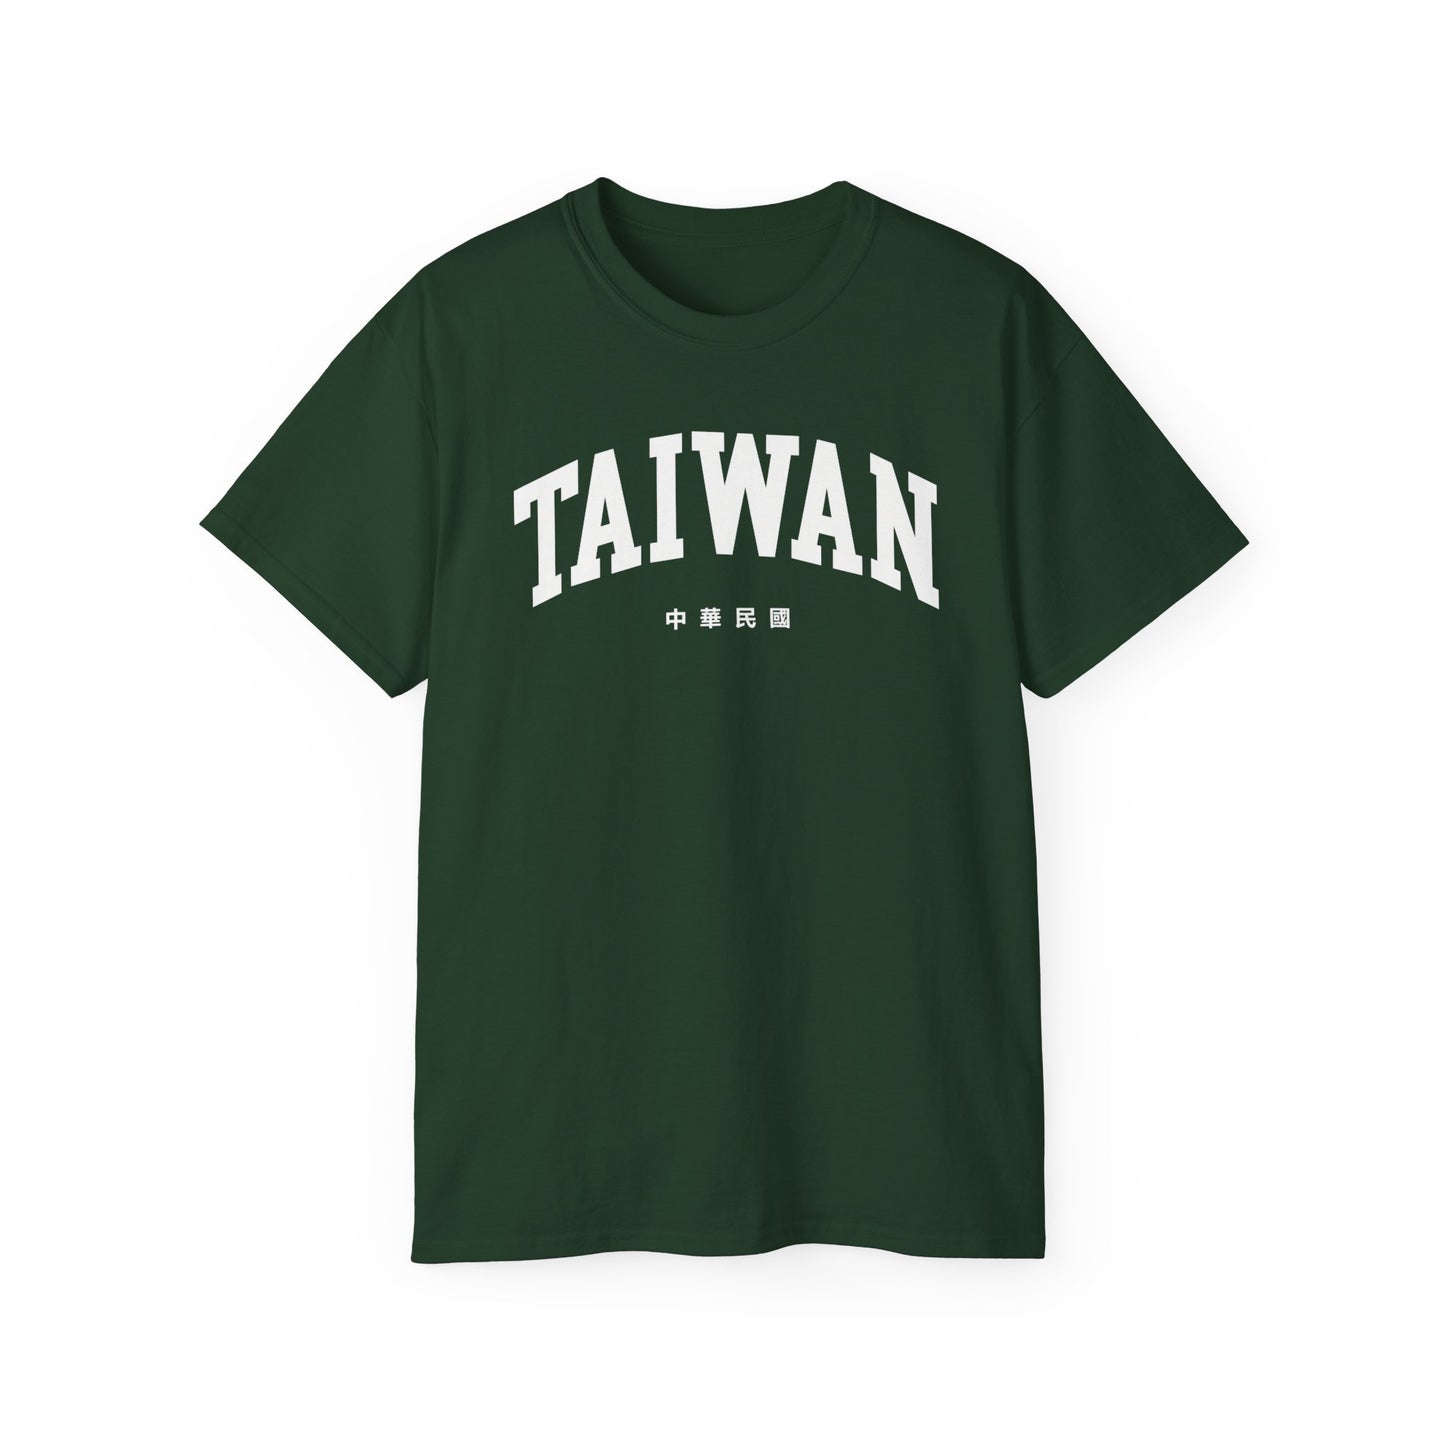 Taiwan Tee